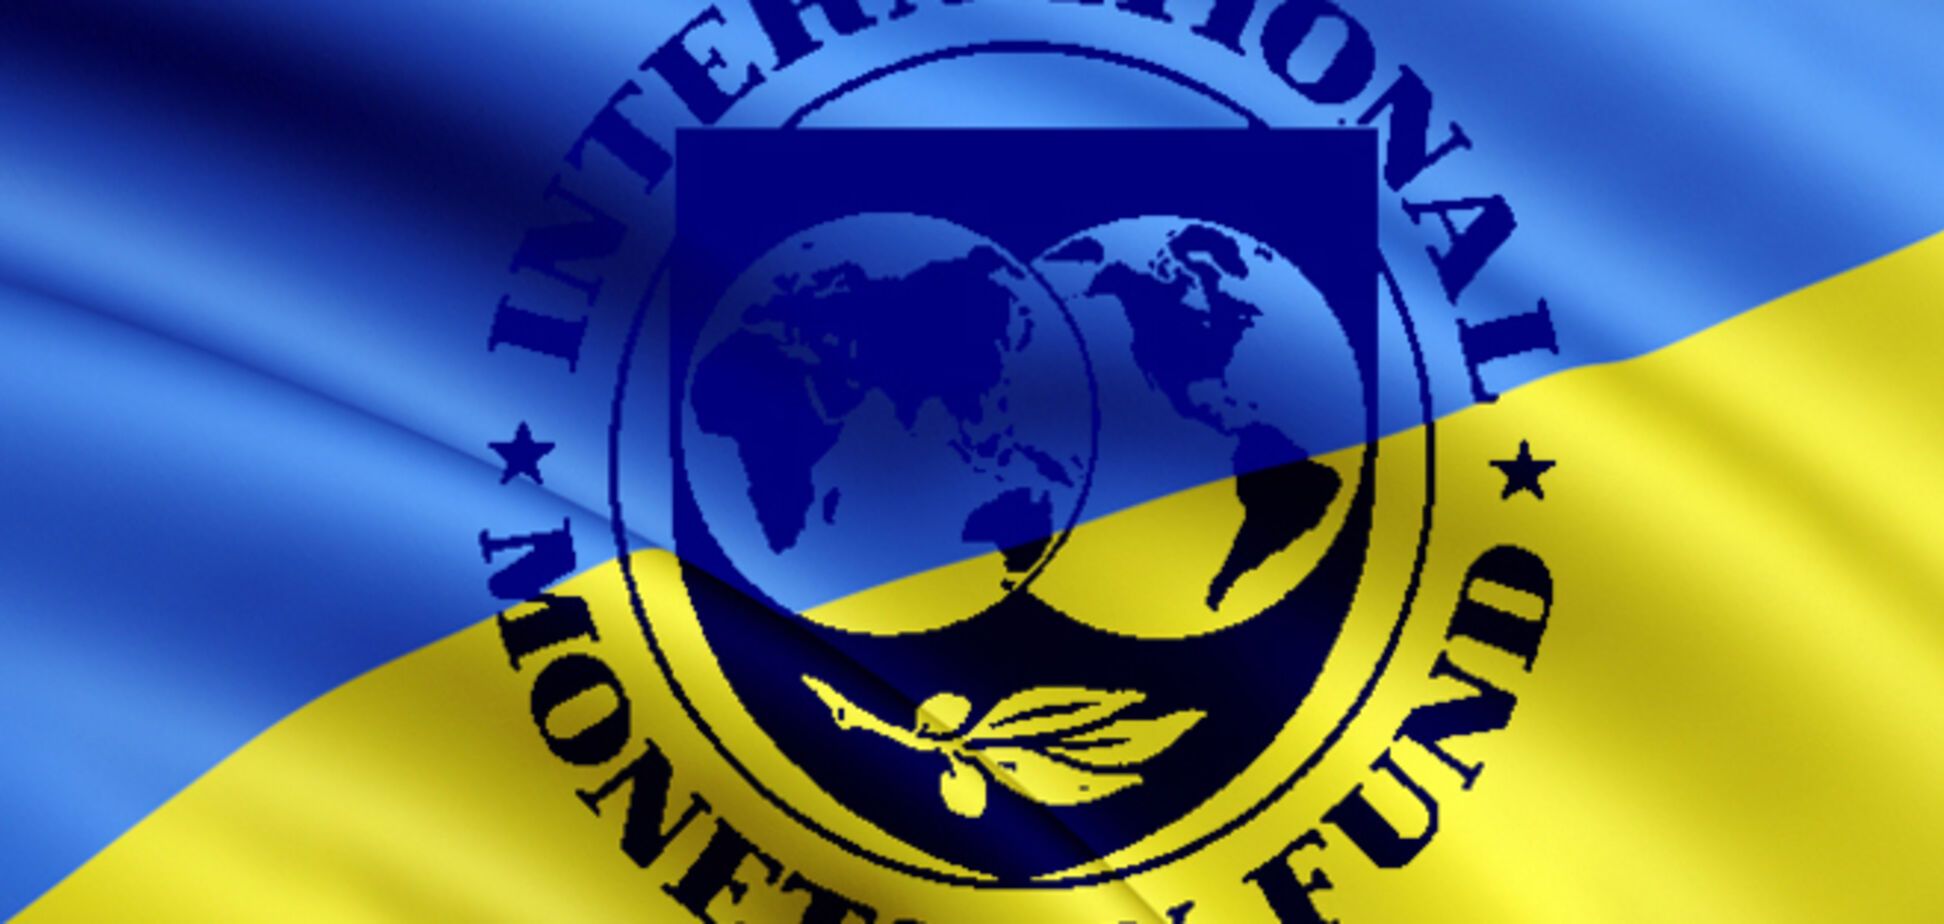 Кредит от МВФ сможет предотвратить дефолт в Украине - эксперт